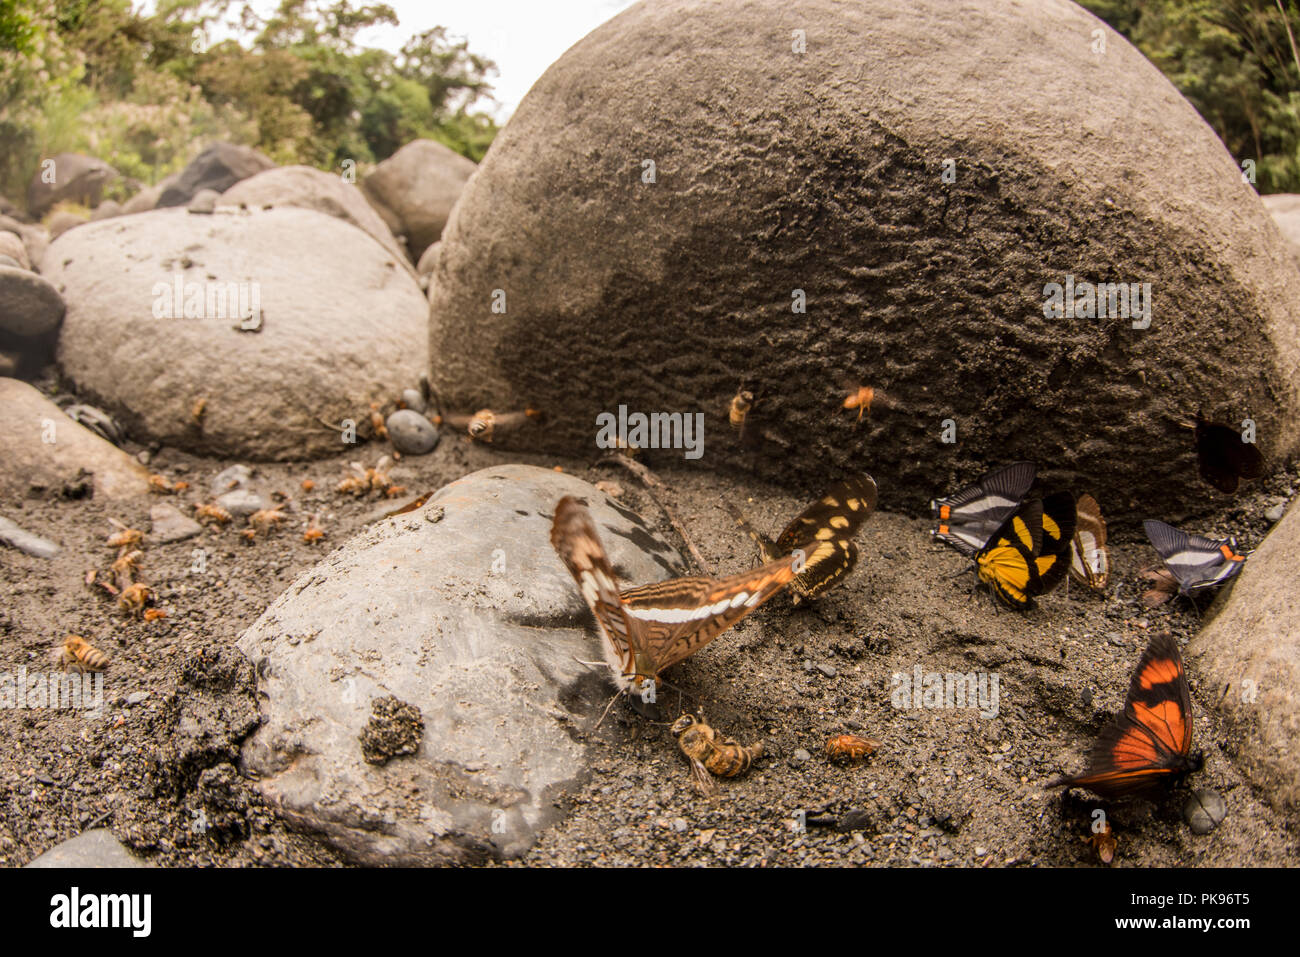 Les papillons et les abeilles se rassemblent sur le sable pour se nourrir dans un comportement appelé puddlage, tenter d'extraire les nutriments des sédiments. Banque D'Images